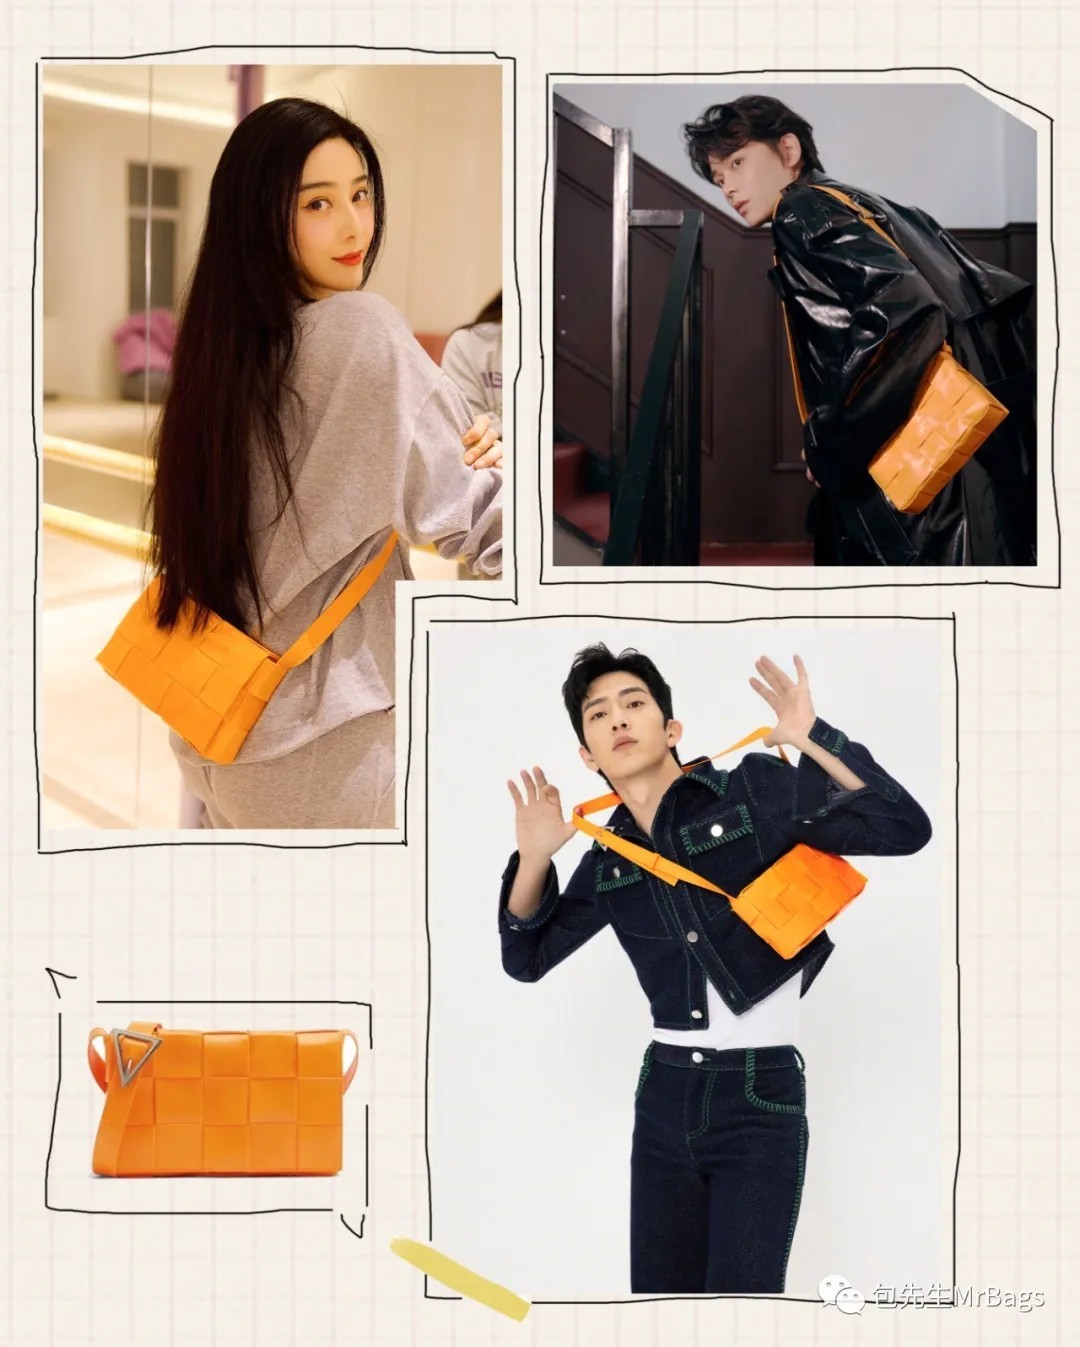 Els 12 més dignes de comprar bosses de disseny de rèpliques d'alta qualitat (actualització de 2022) - Botiga en línia de bosses de Louis Vuitton falses de millor qualitat, bosses de dissenyadors de rèplica ru